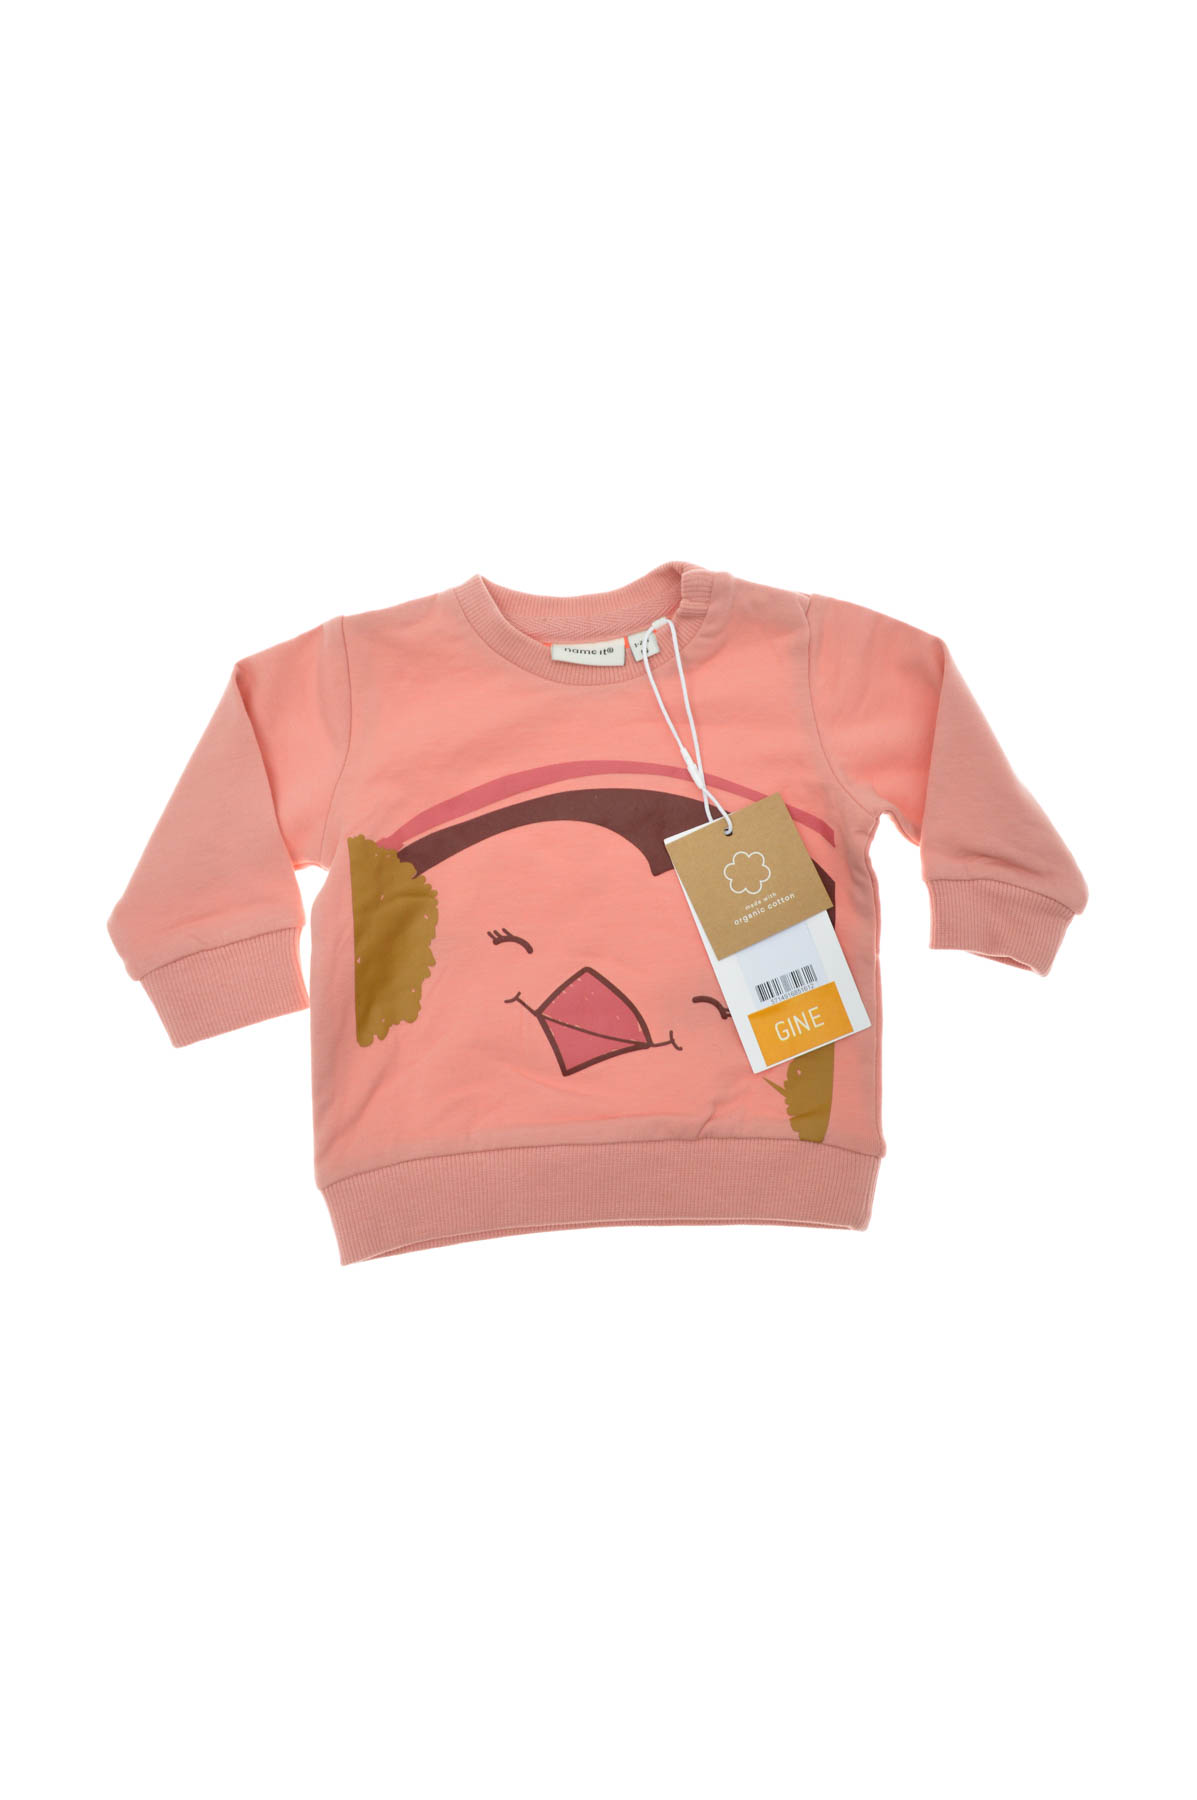 Bluza pentru bebeluș fată - Name It - 0